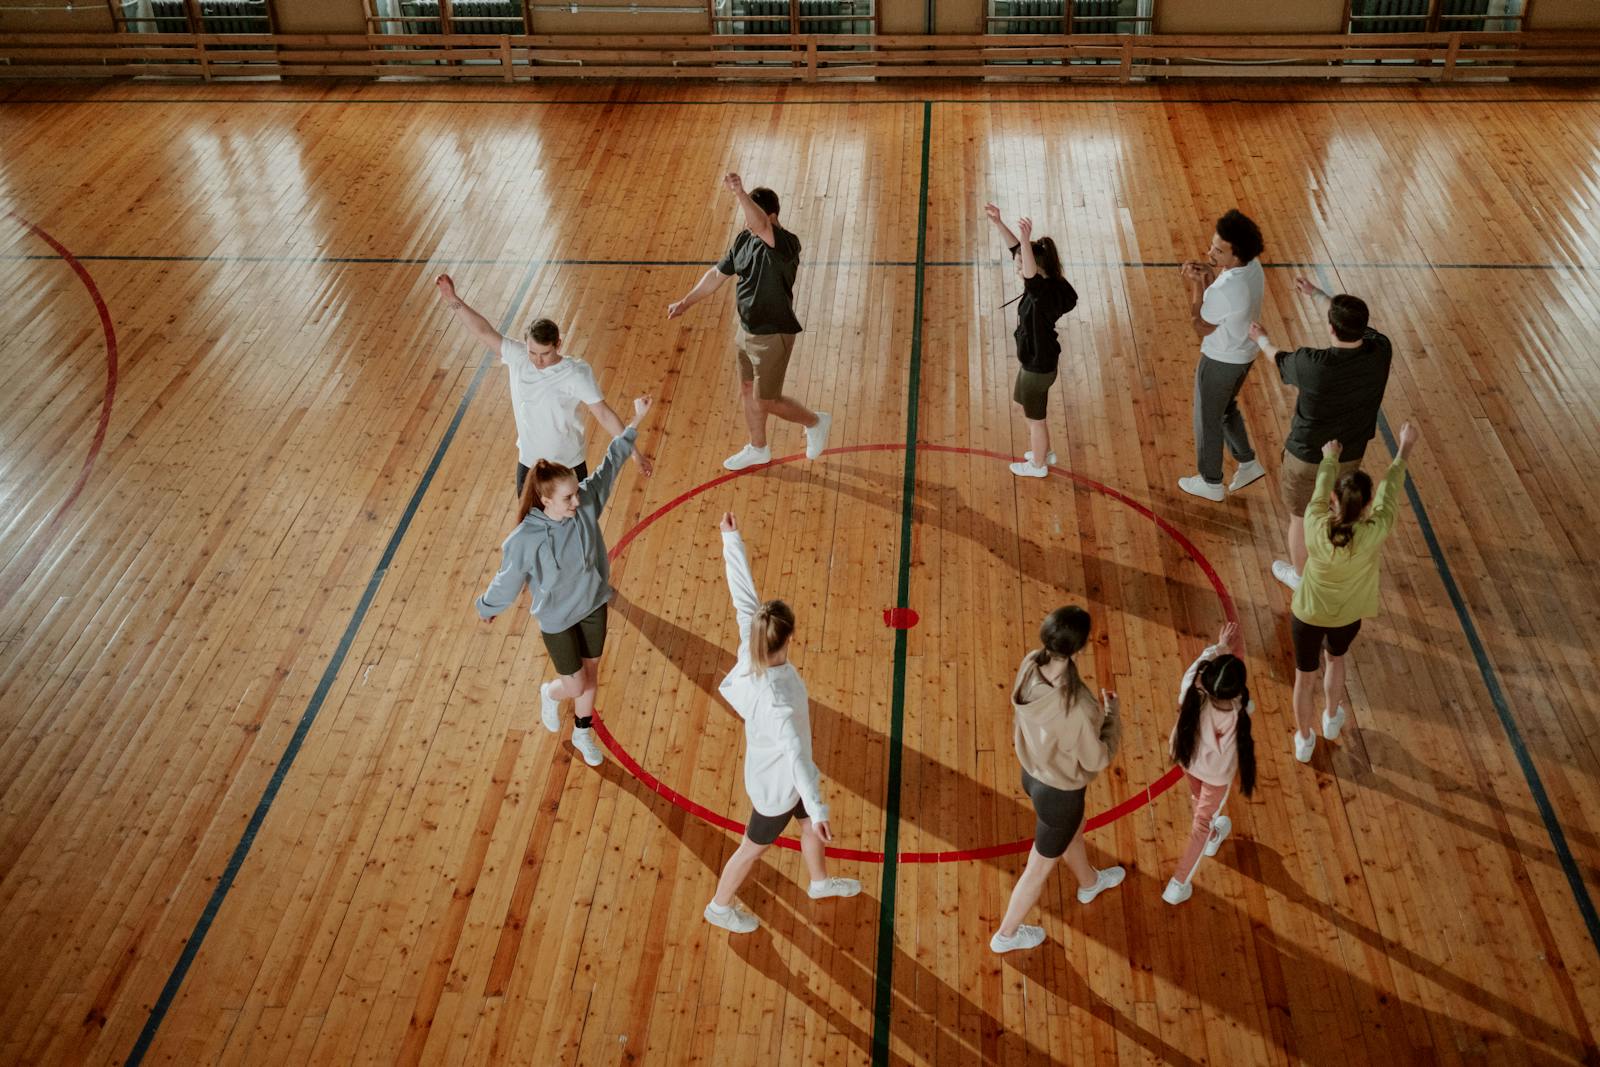 Groupe d'enfants dans qui marchent dans une salle de gymnastique ou salle de jeux d'école.